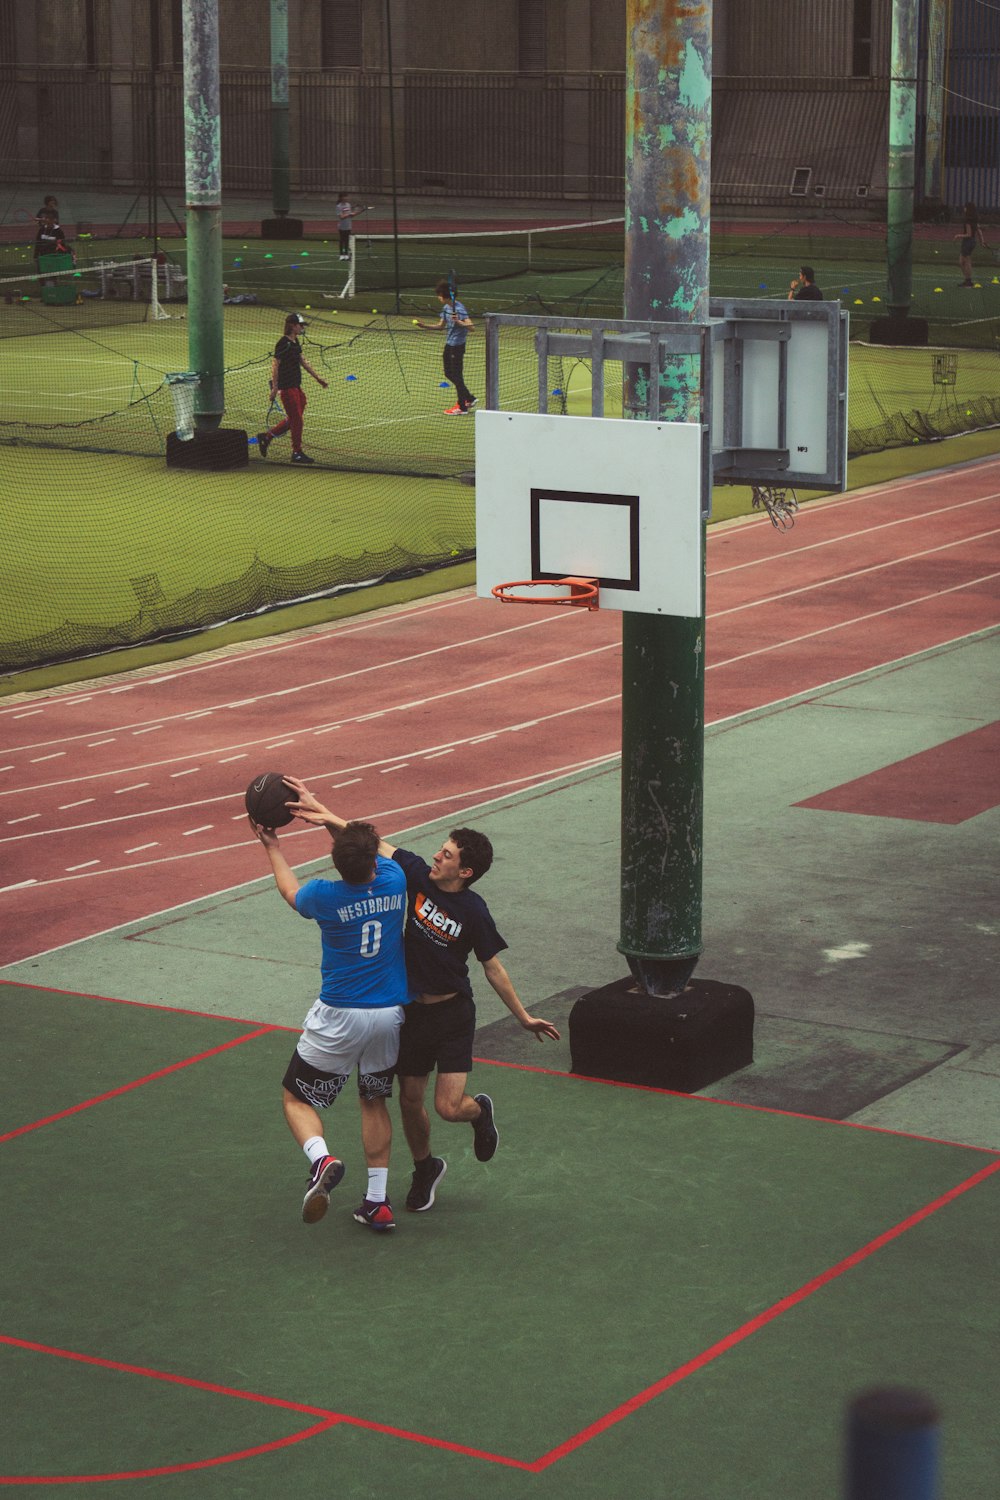 Un par de personas jugando baloncesto